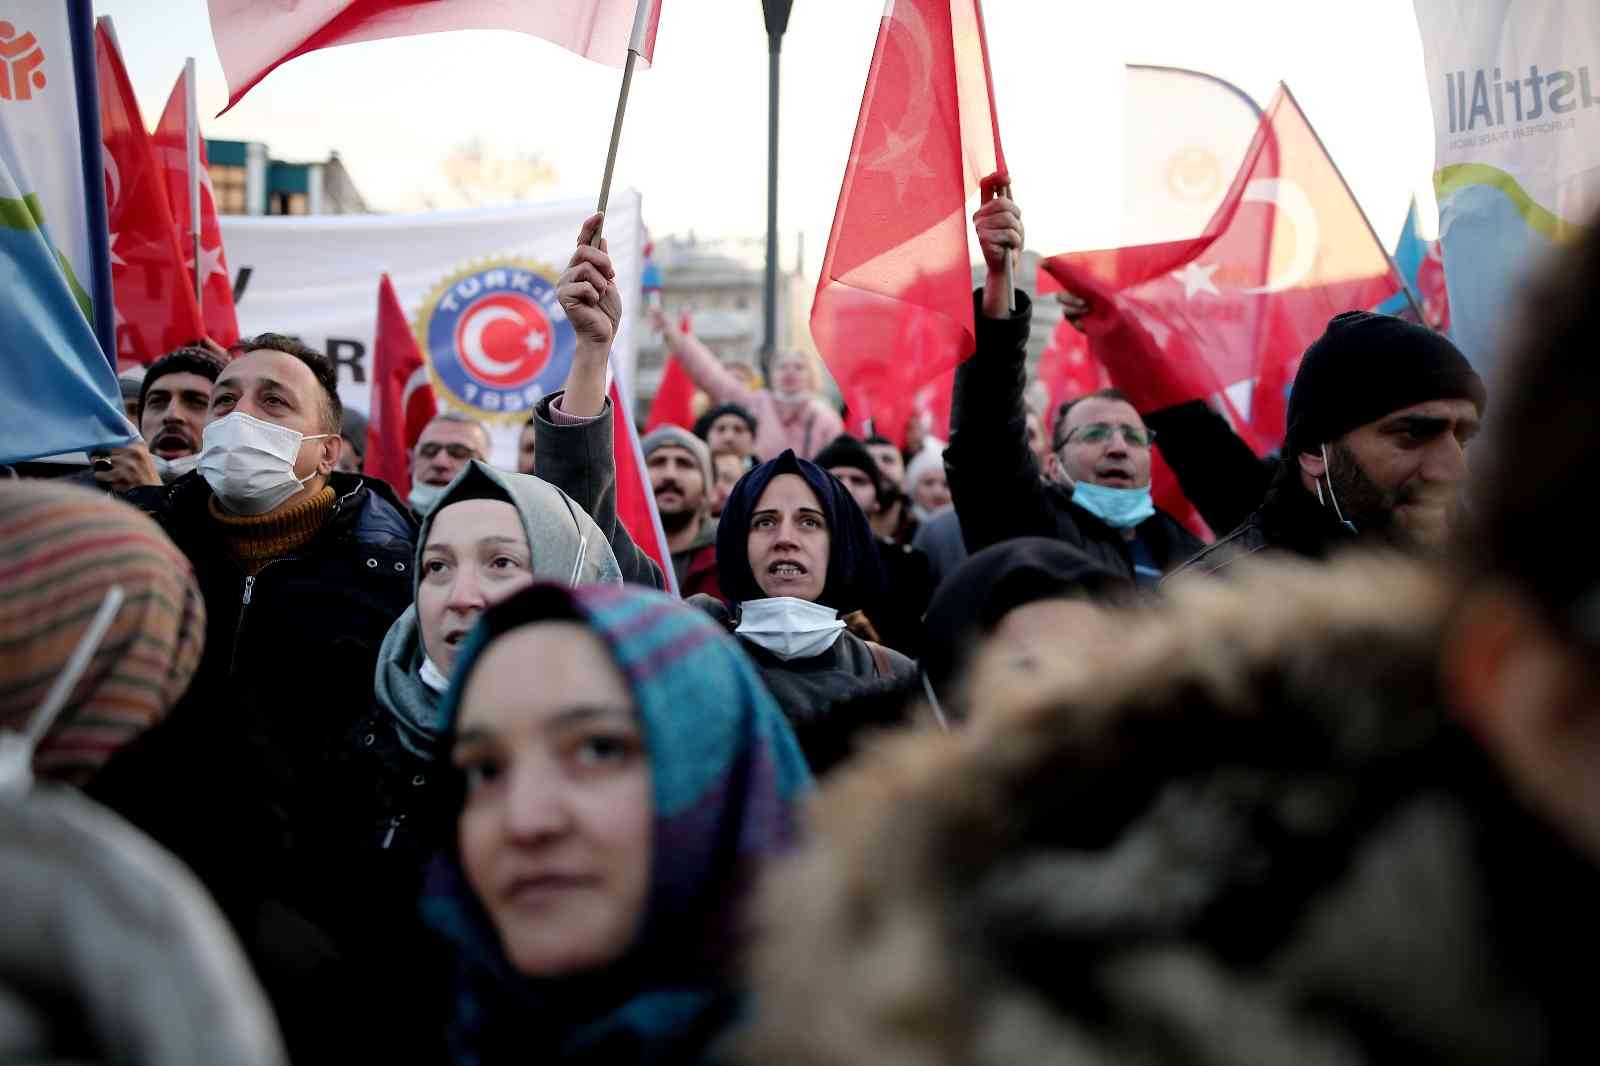 Bursa’da metal işçileri meydanlara indi